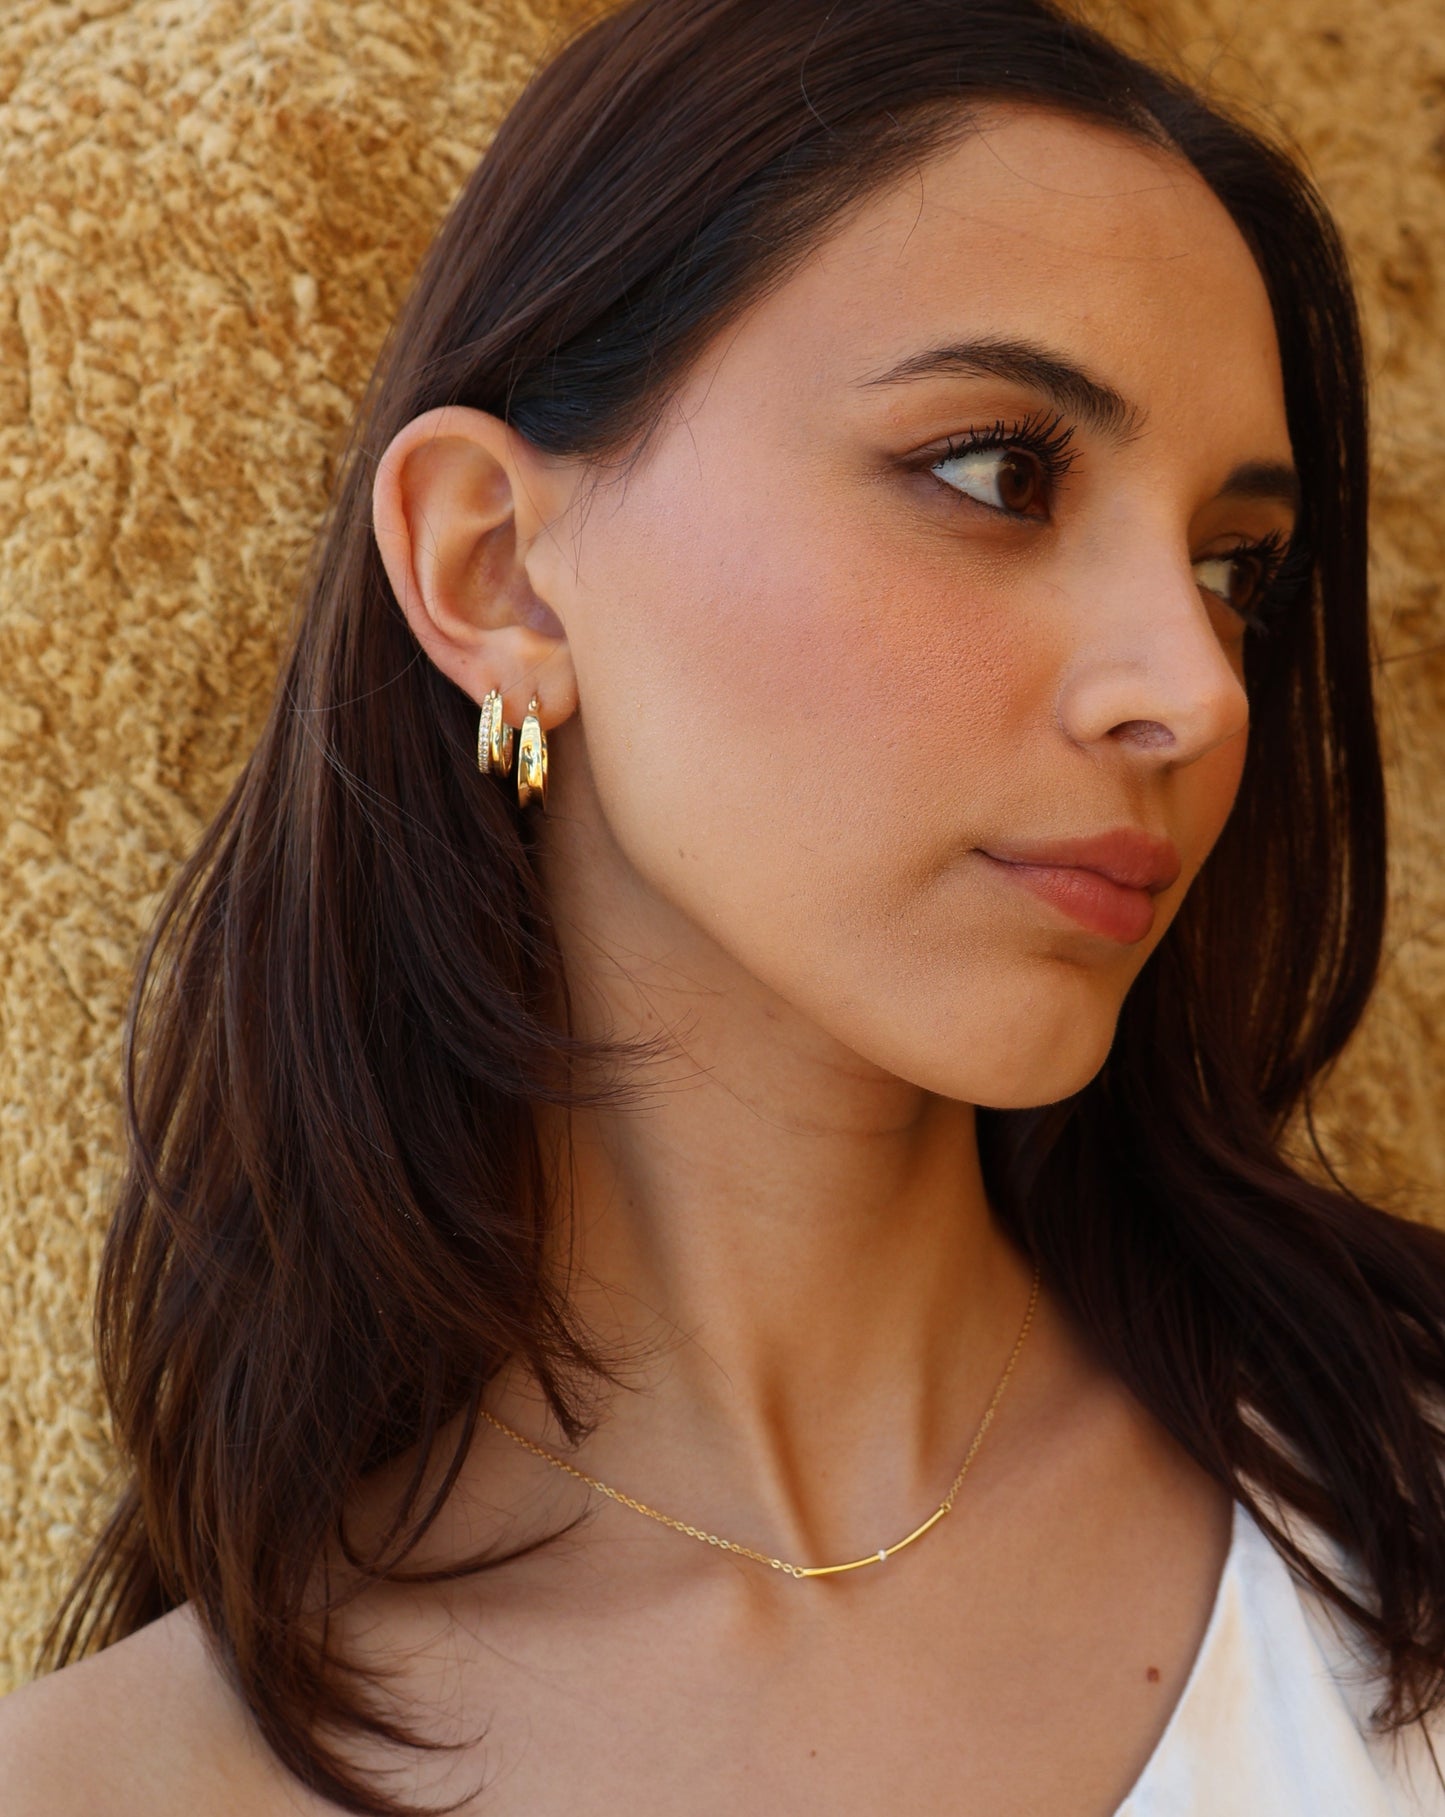 Monaco earrings - gold